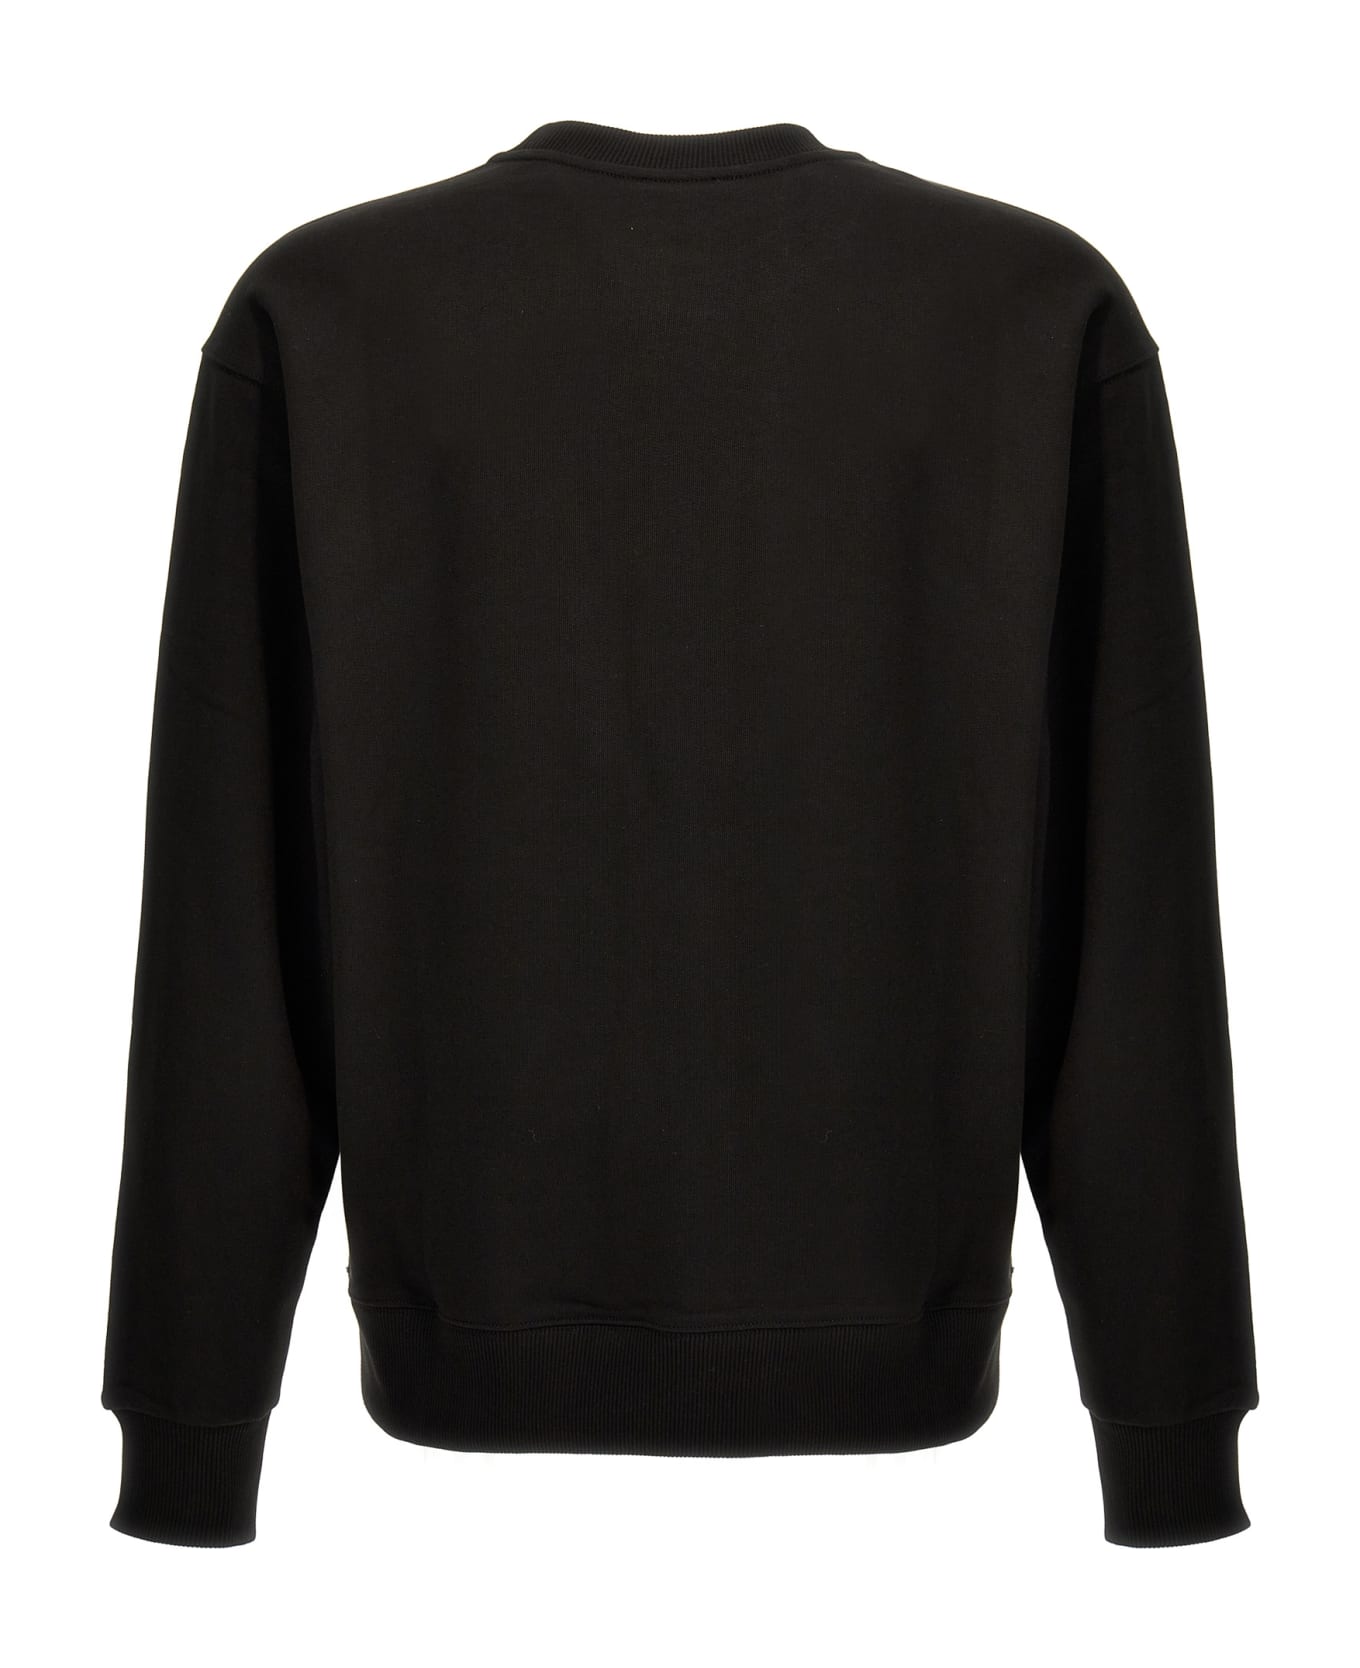 Kenzo Boke Flower Sweatshirt - Black